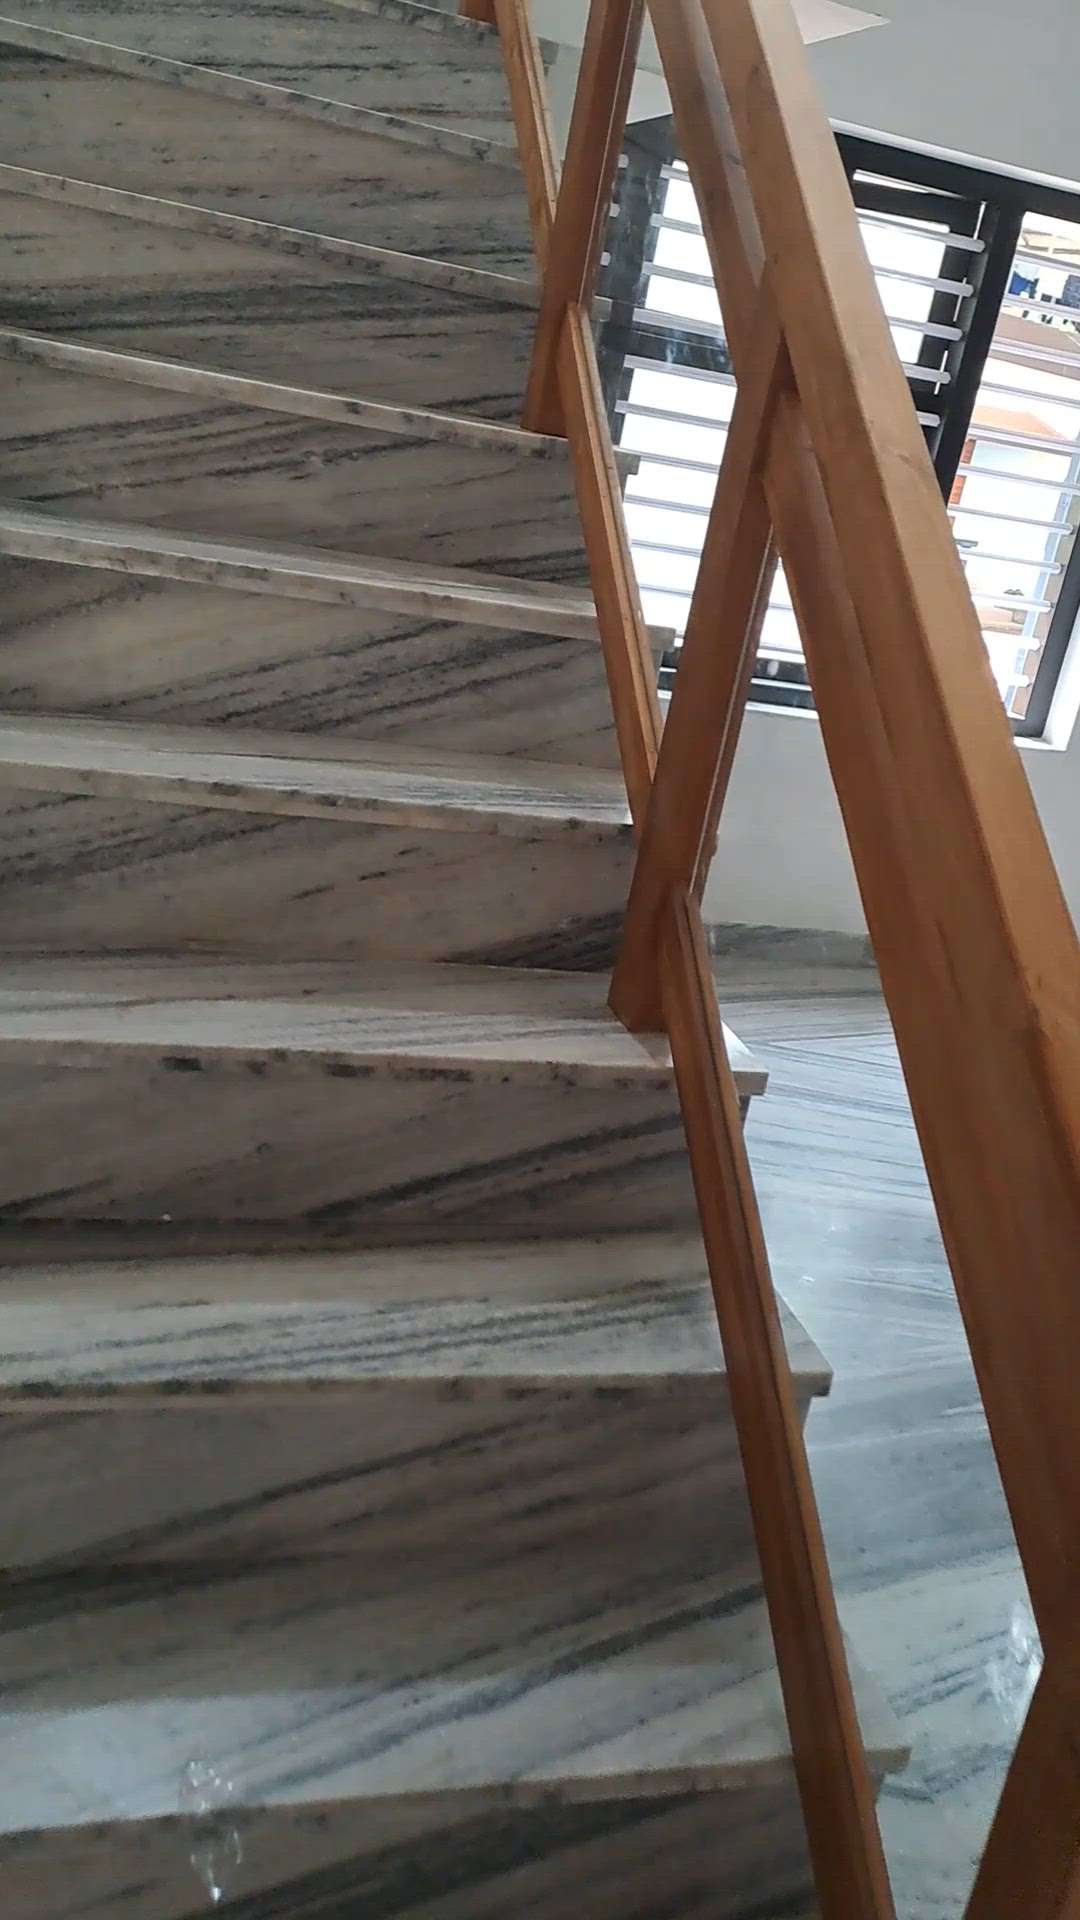 teak wood staircase, doors
 #GlassStaircase  #teakwoodstair  #WoodenStaircase  #woodendoors